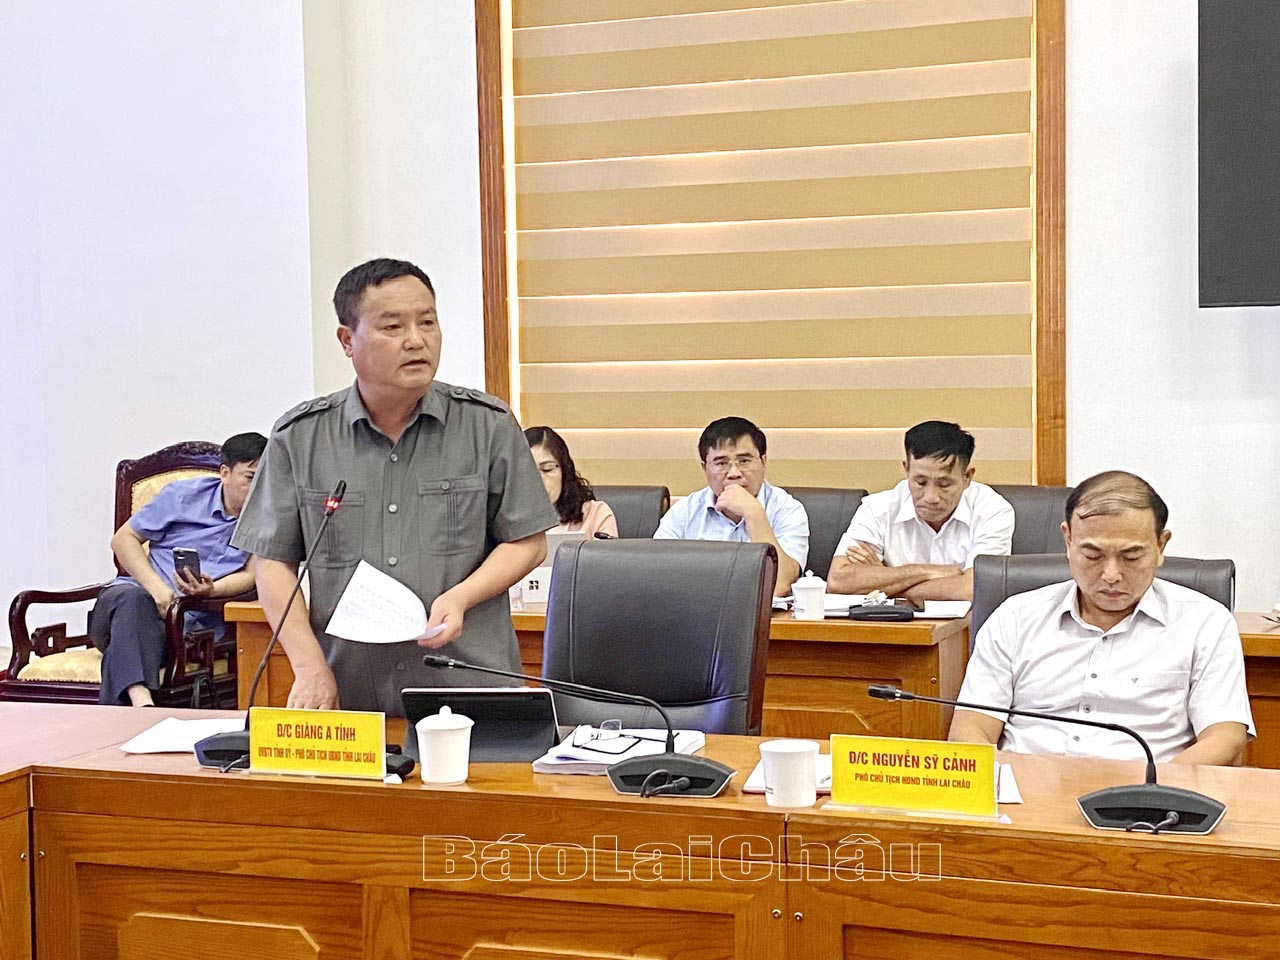 Đồng chí Giàng A Tính - Ủy viên Ban Thường vụ Tỉnh ủy, Phó Chủ tịch UBND tỉnh phát biểu tại cuộc họp.